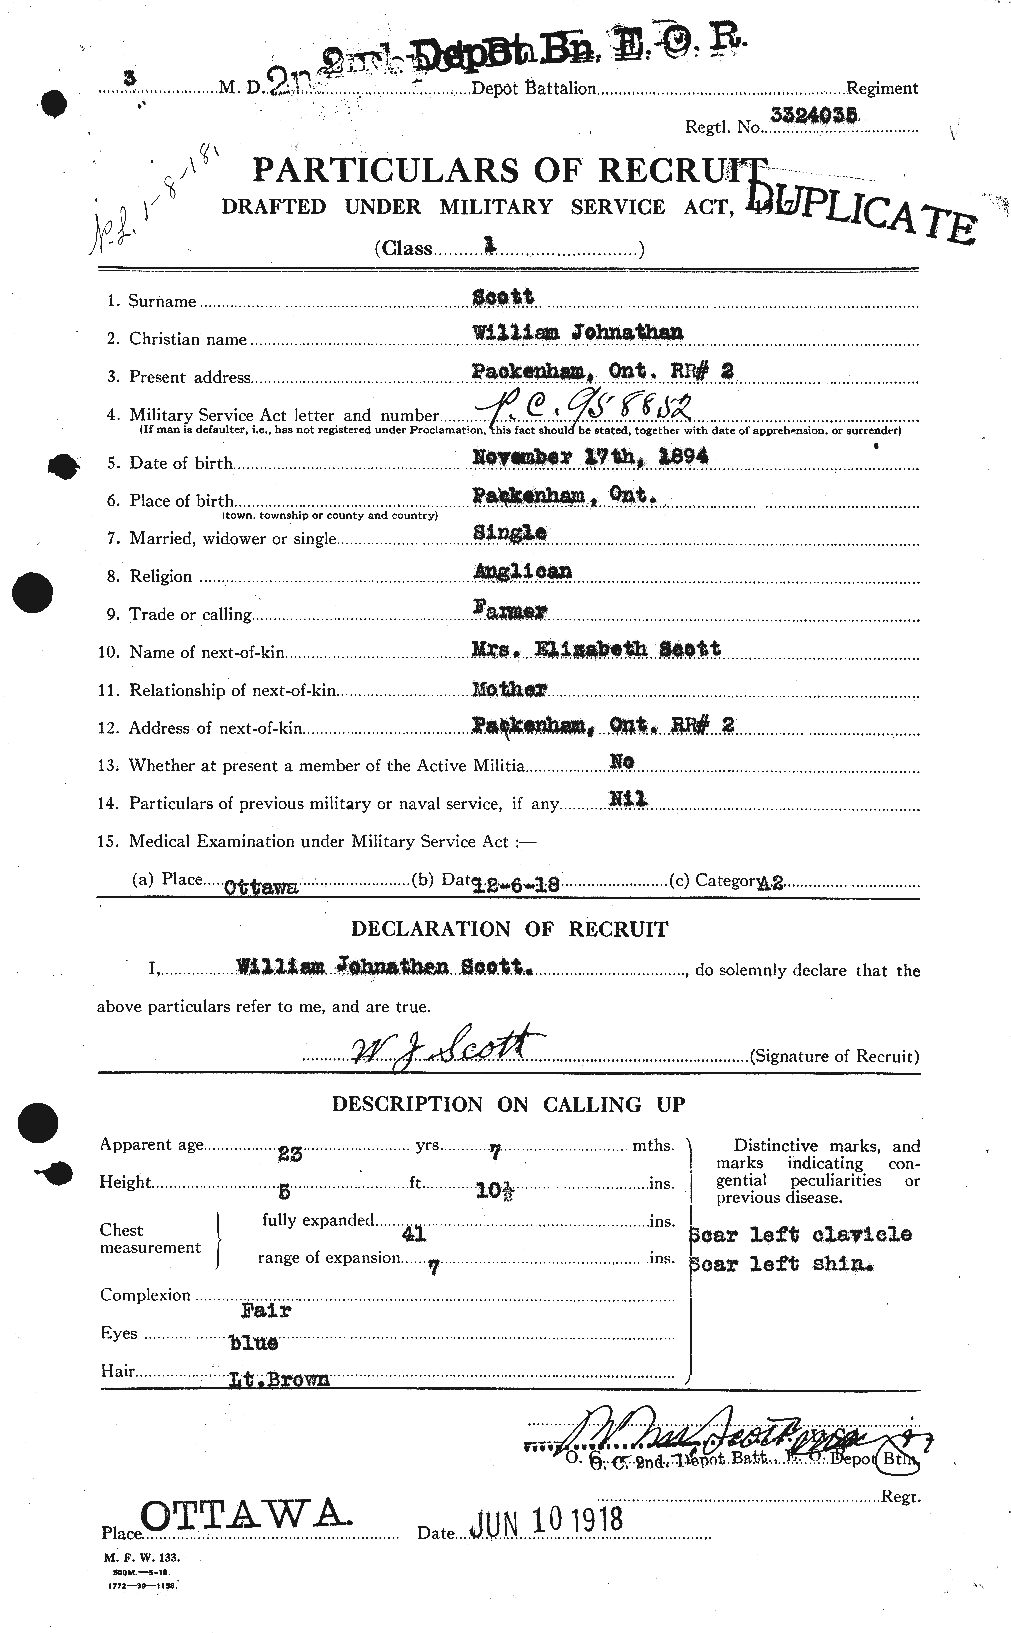 Dossiers du Personnel de la Première Guerre mondiale - CEC 086753a